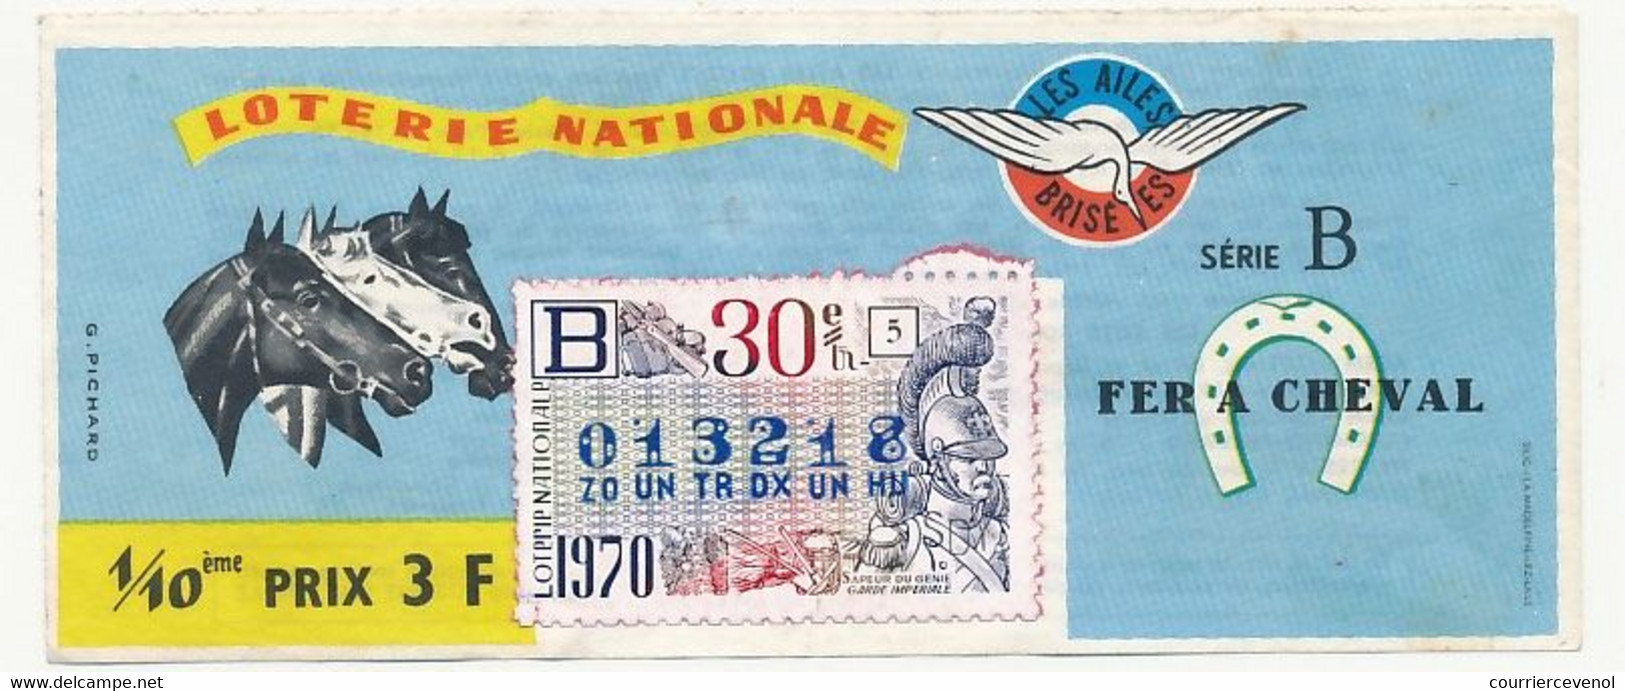 FRANCE - Loterie Nationale - 1/10ème - Les Ailes Brisées - Fer à Cheval  - 30eme Tranche 1970 - Billets De Loterie